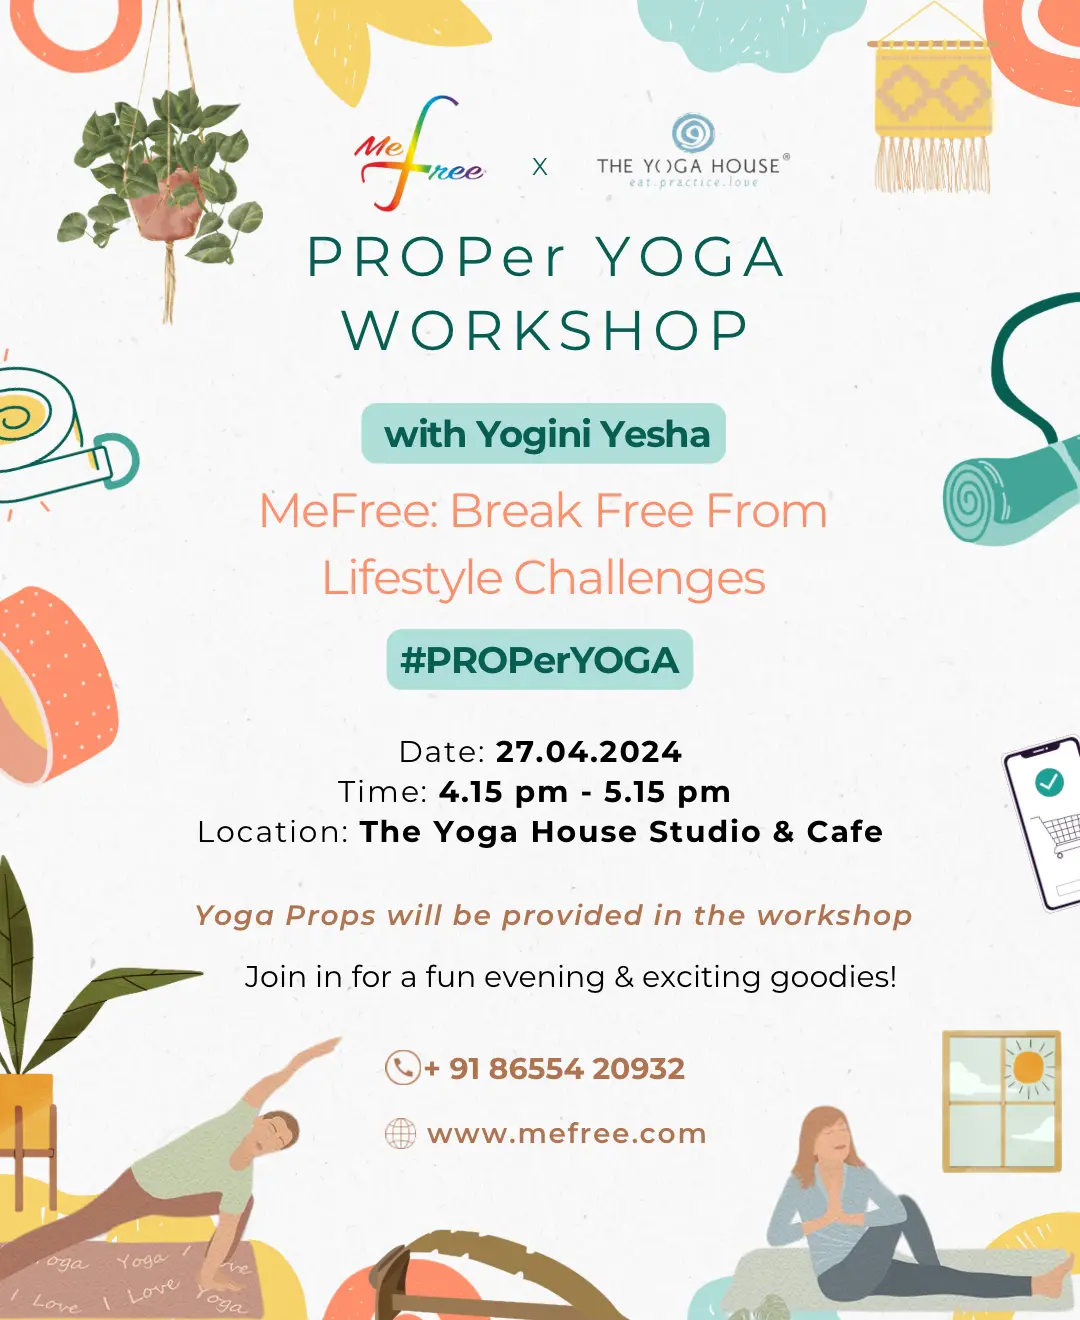 Workshop For Proper Yoga